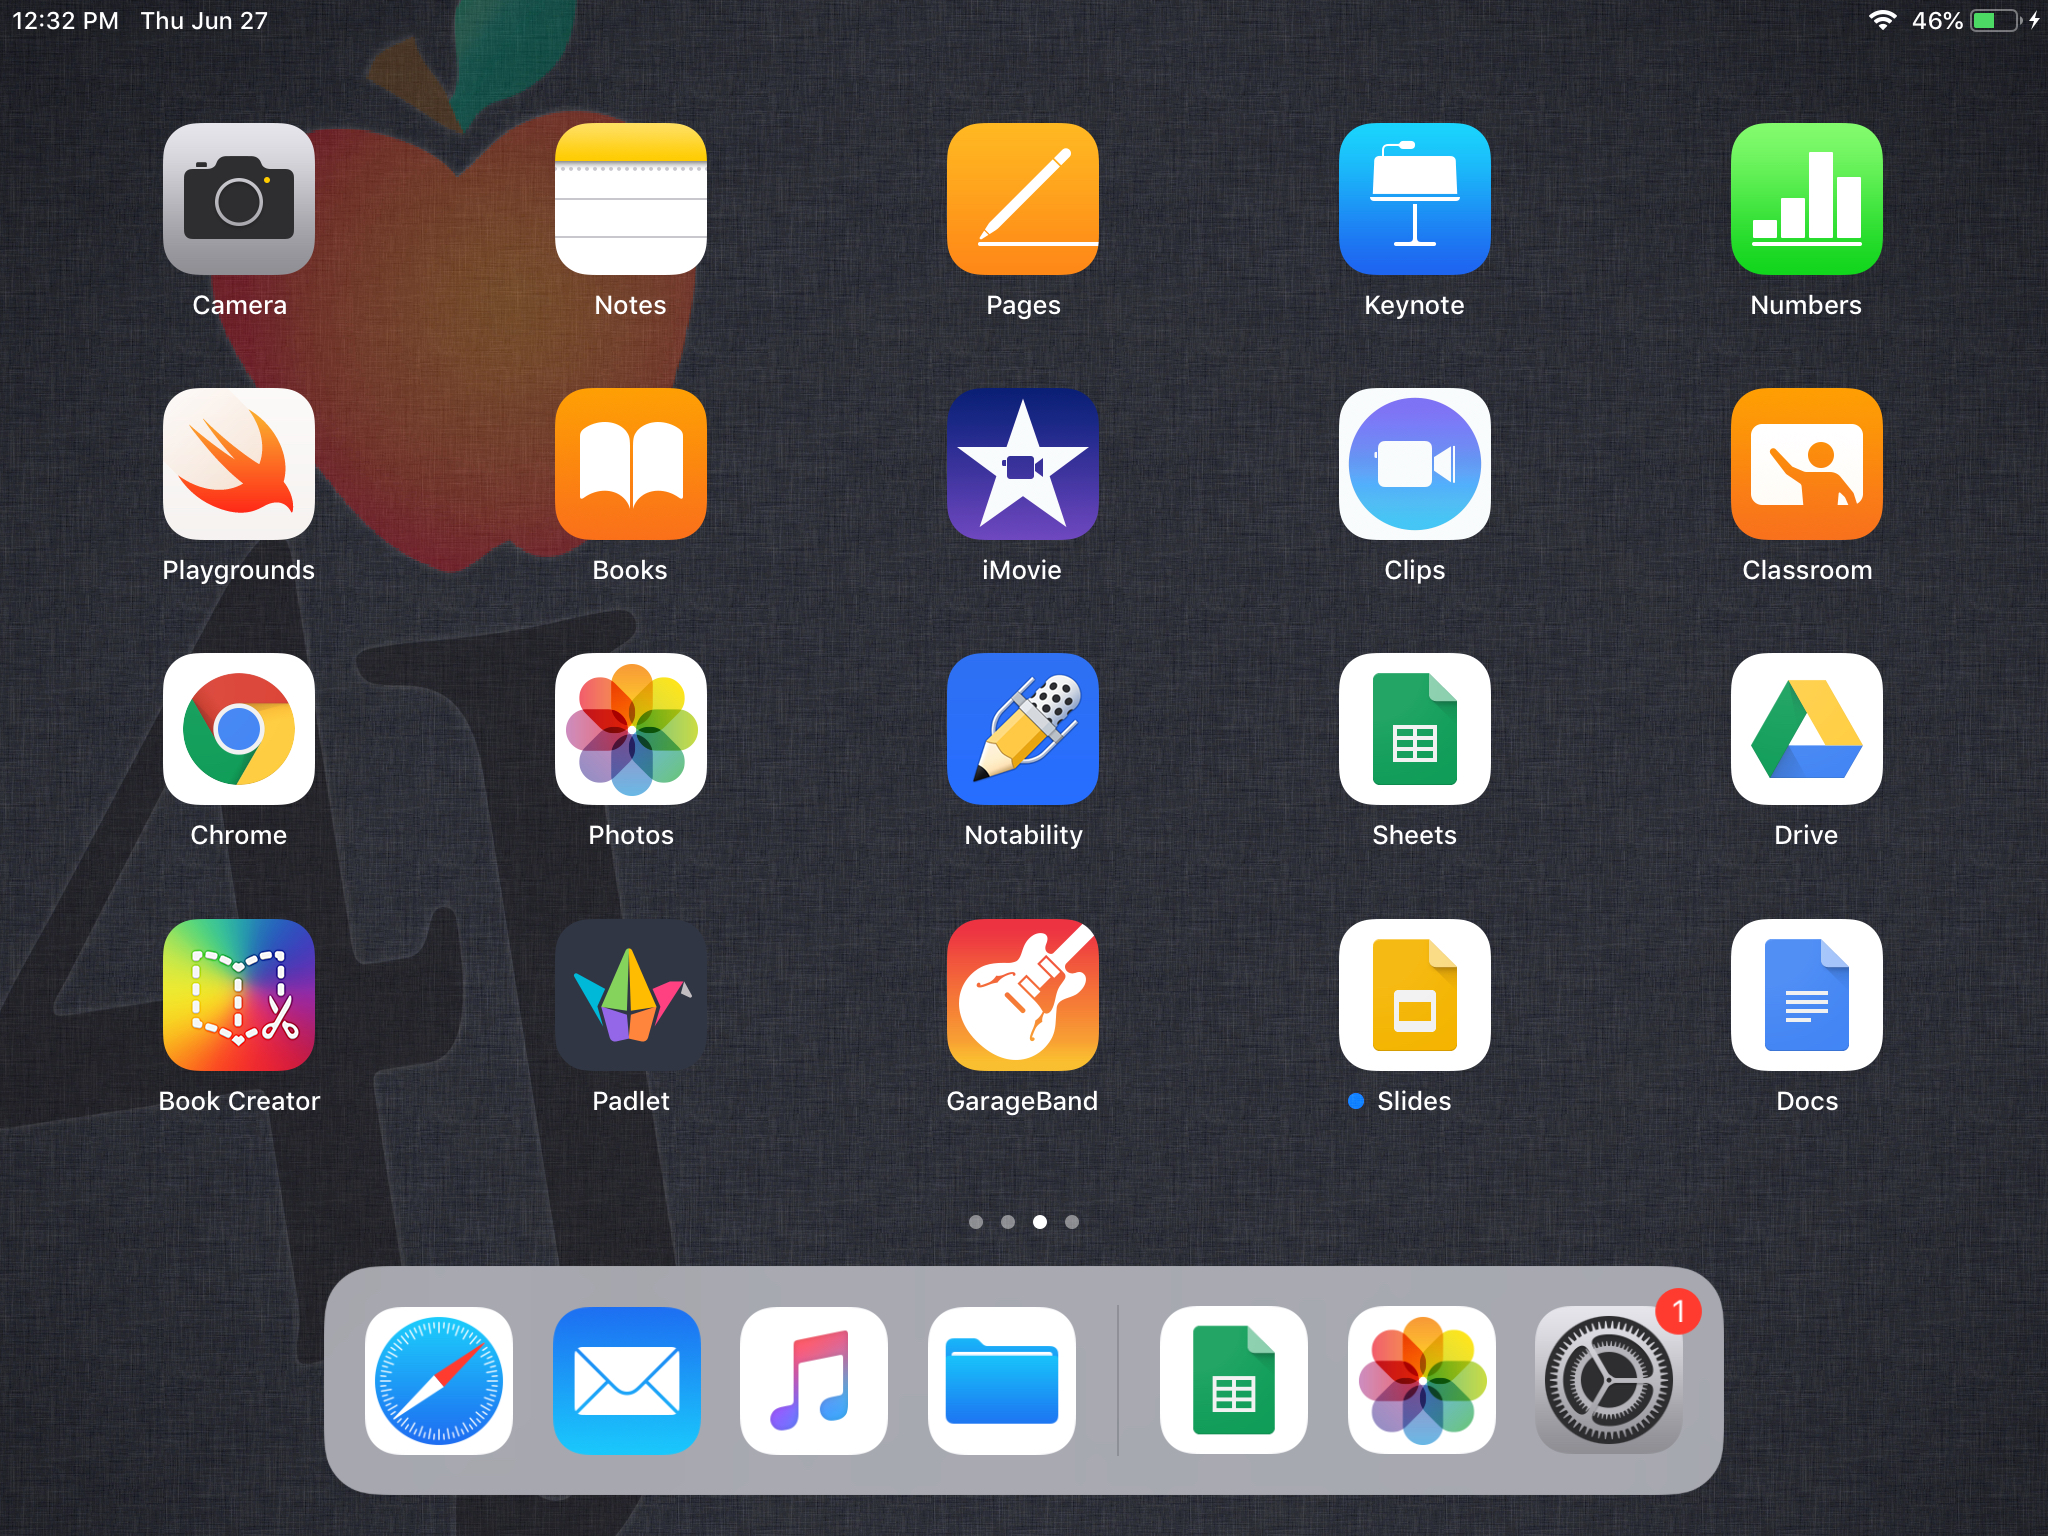 iPad desktop apps